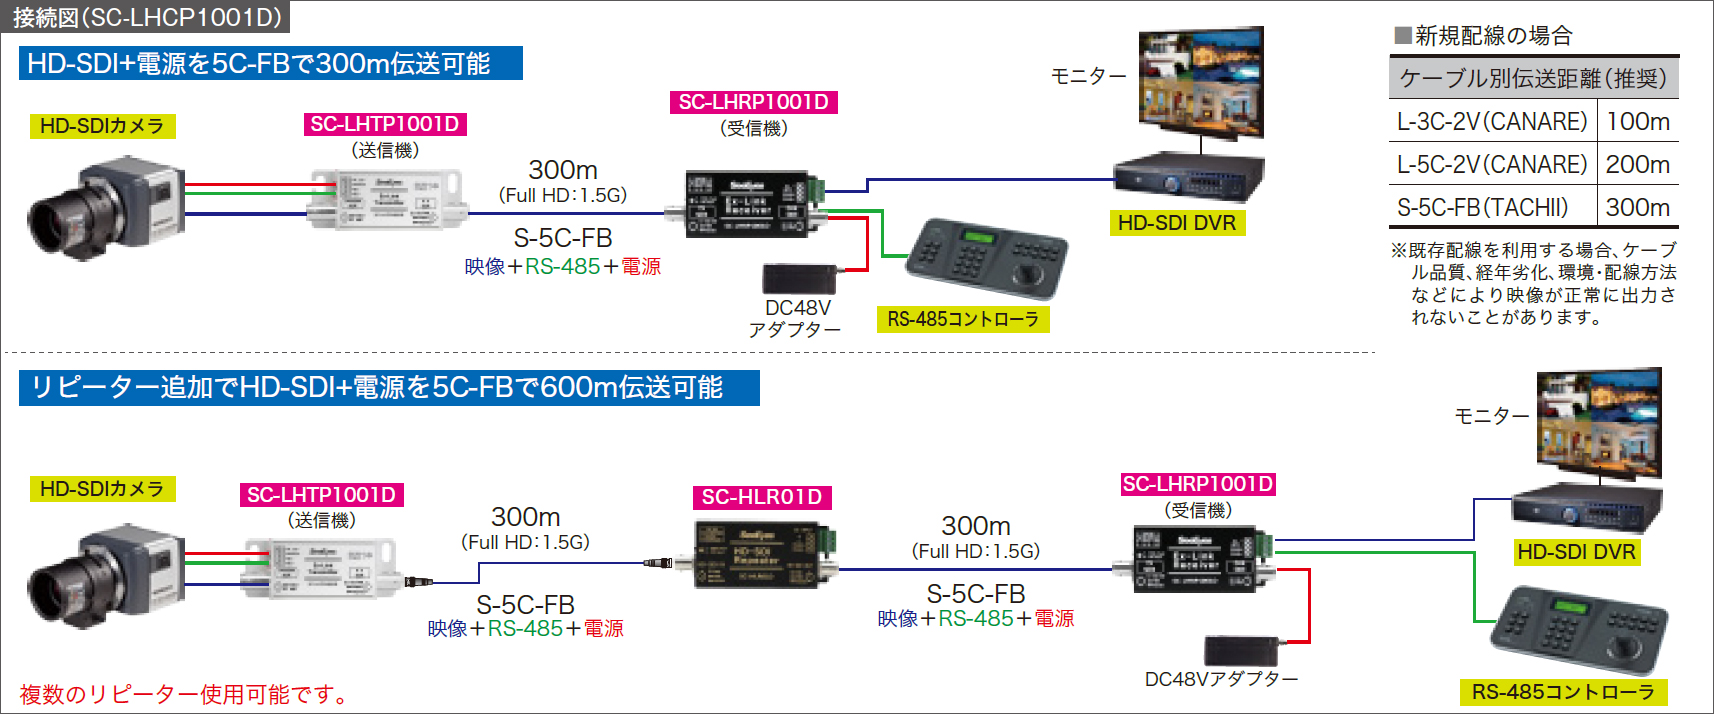 SC-LHCP1001D HD-SDI長距離電源重畳装置 | HD-CCTV/HD-SDI 防犯・監視 